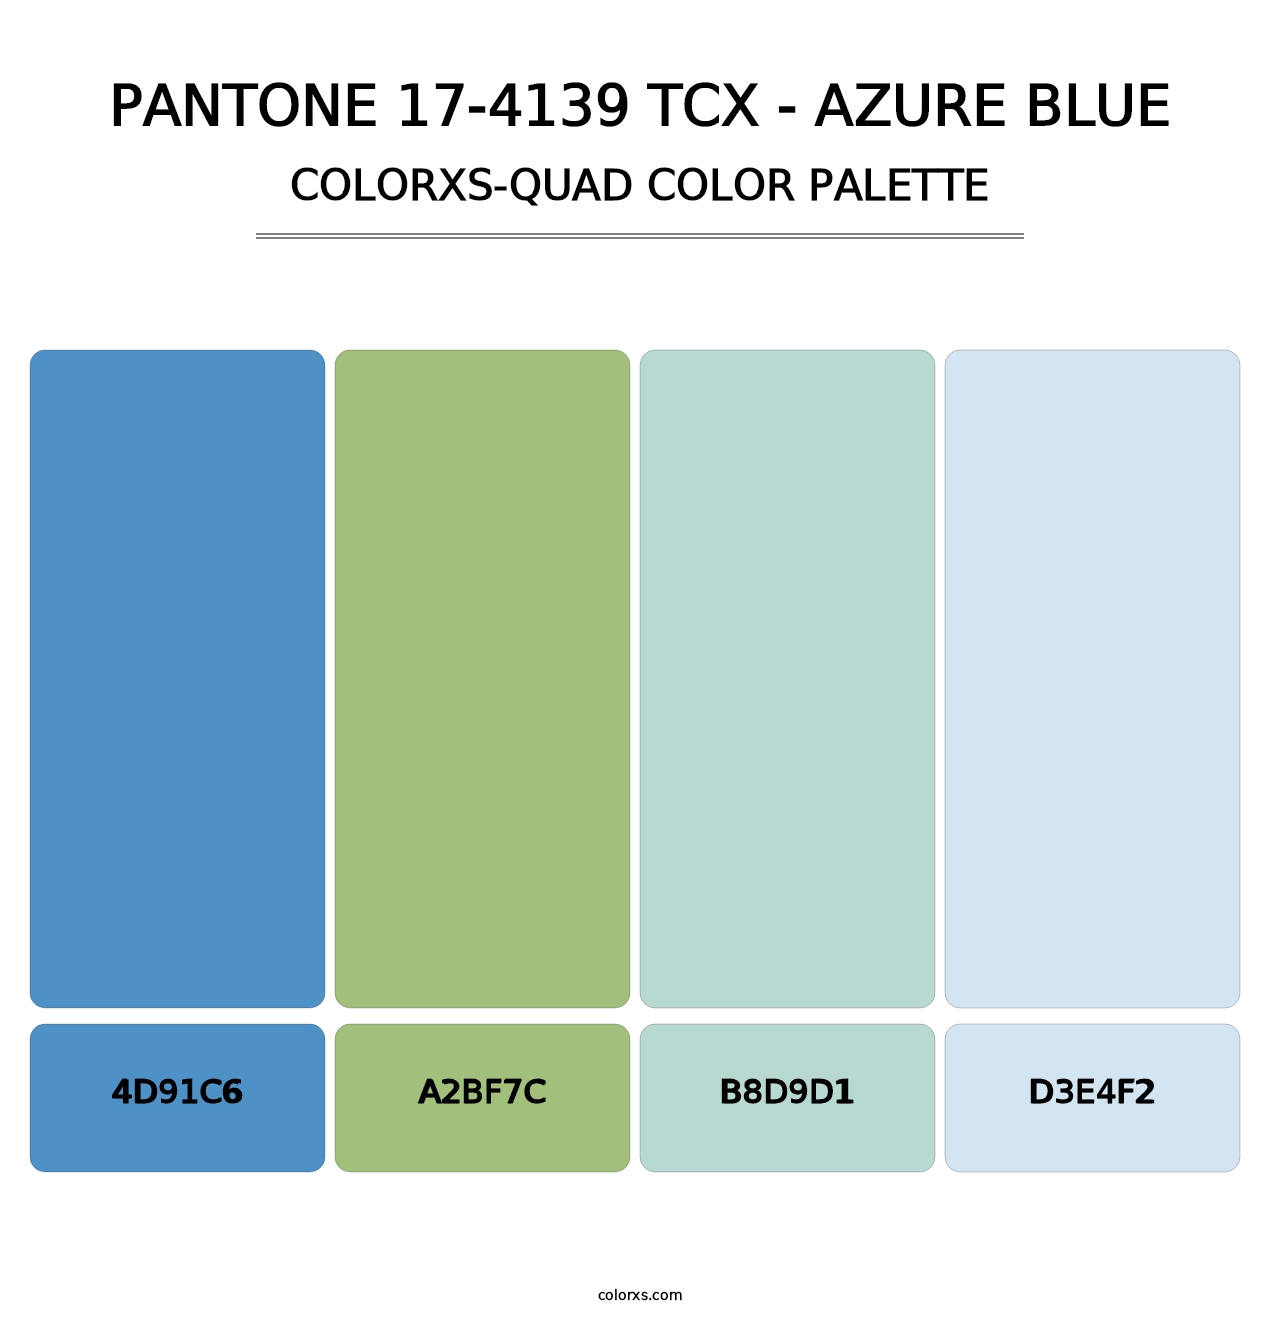 PANTONE 17-4139 TCX - Azure Blue - Colorxs Quad Palette